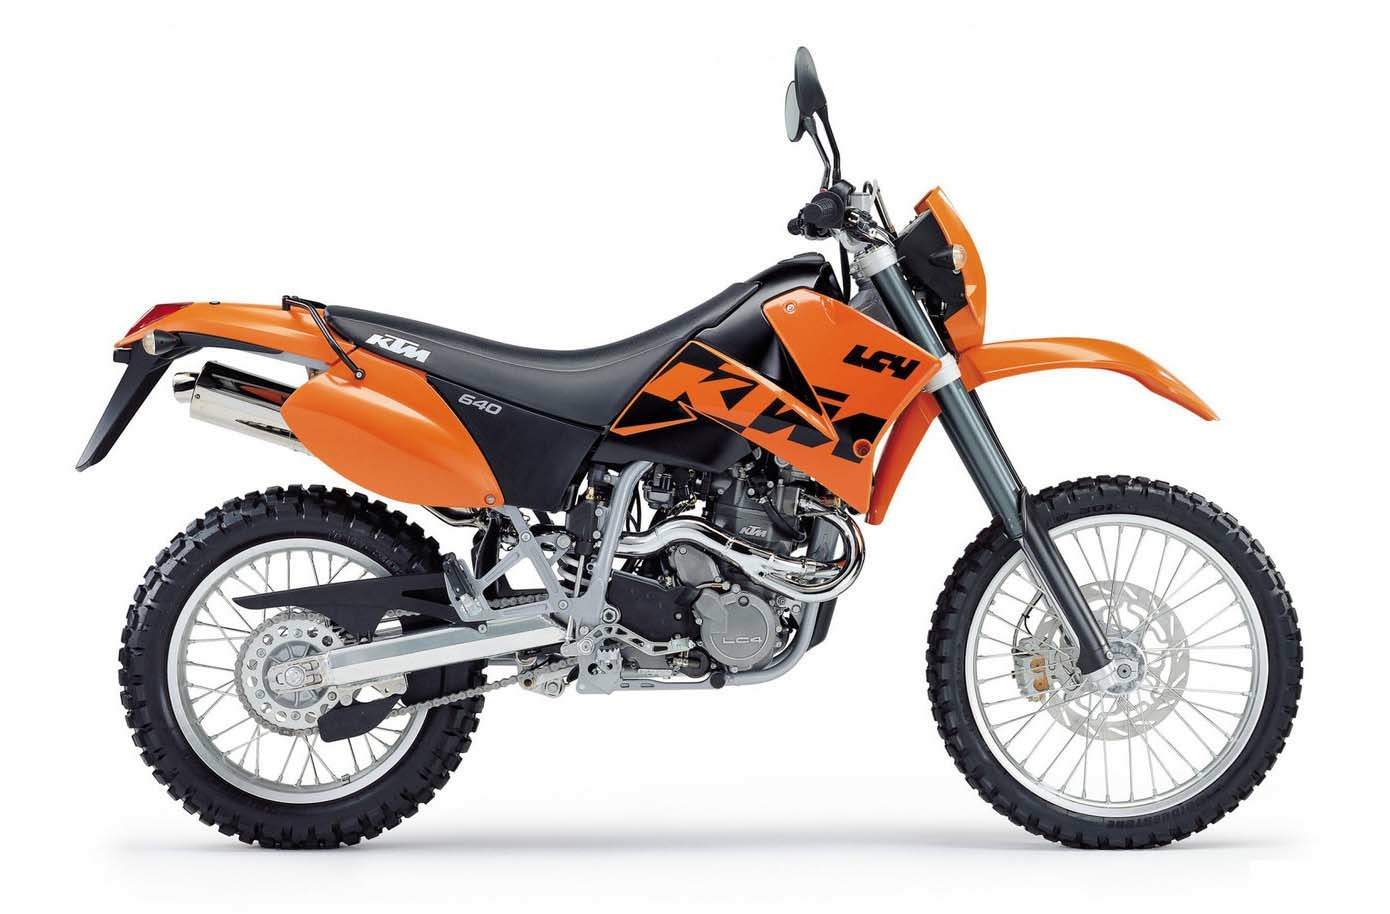 KTM 640 Adventure motorcycle rental